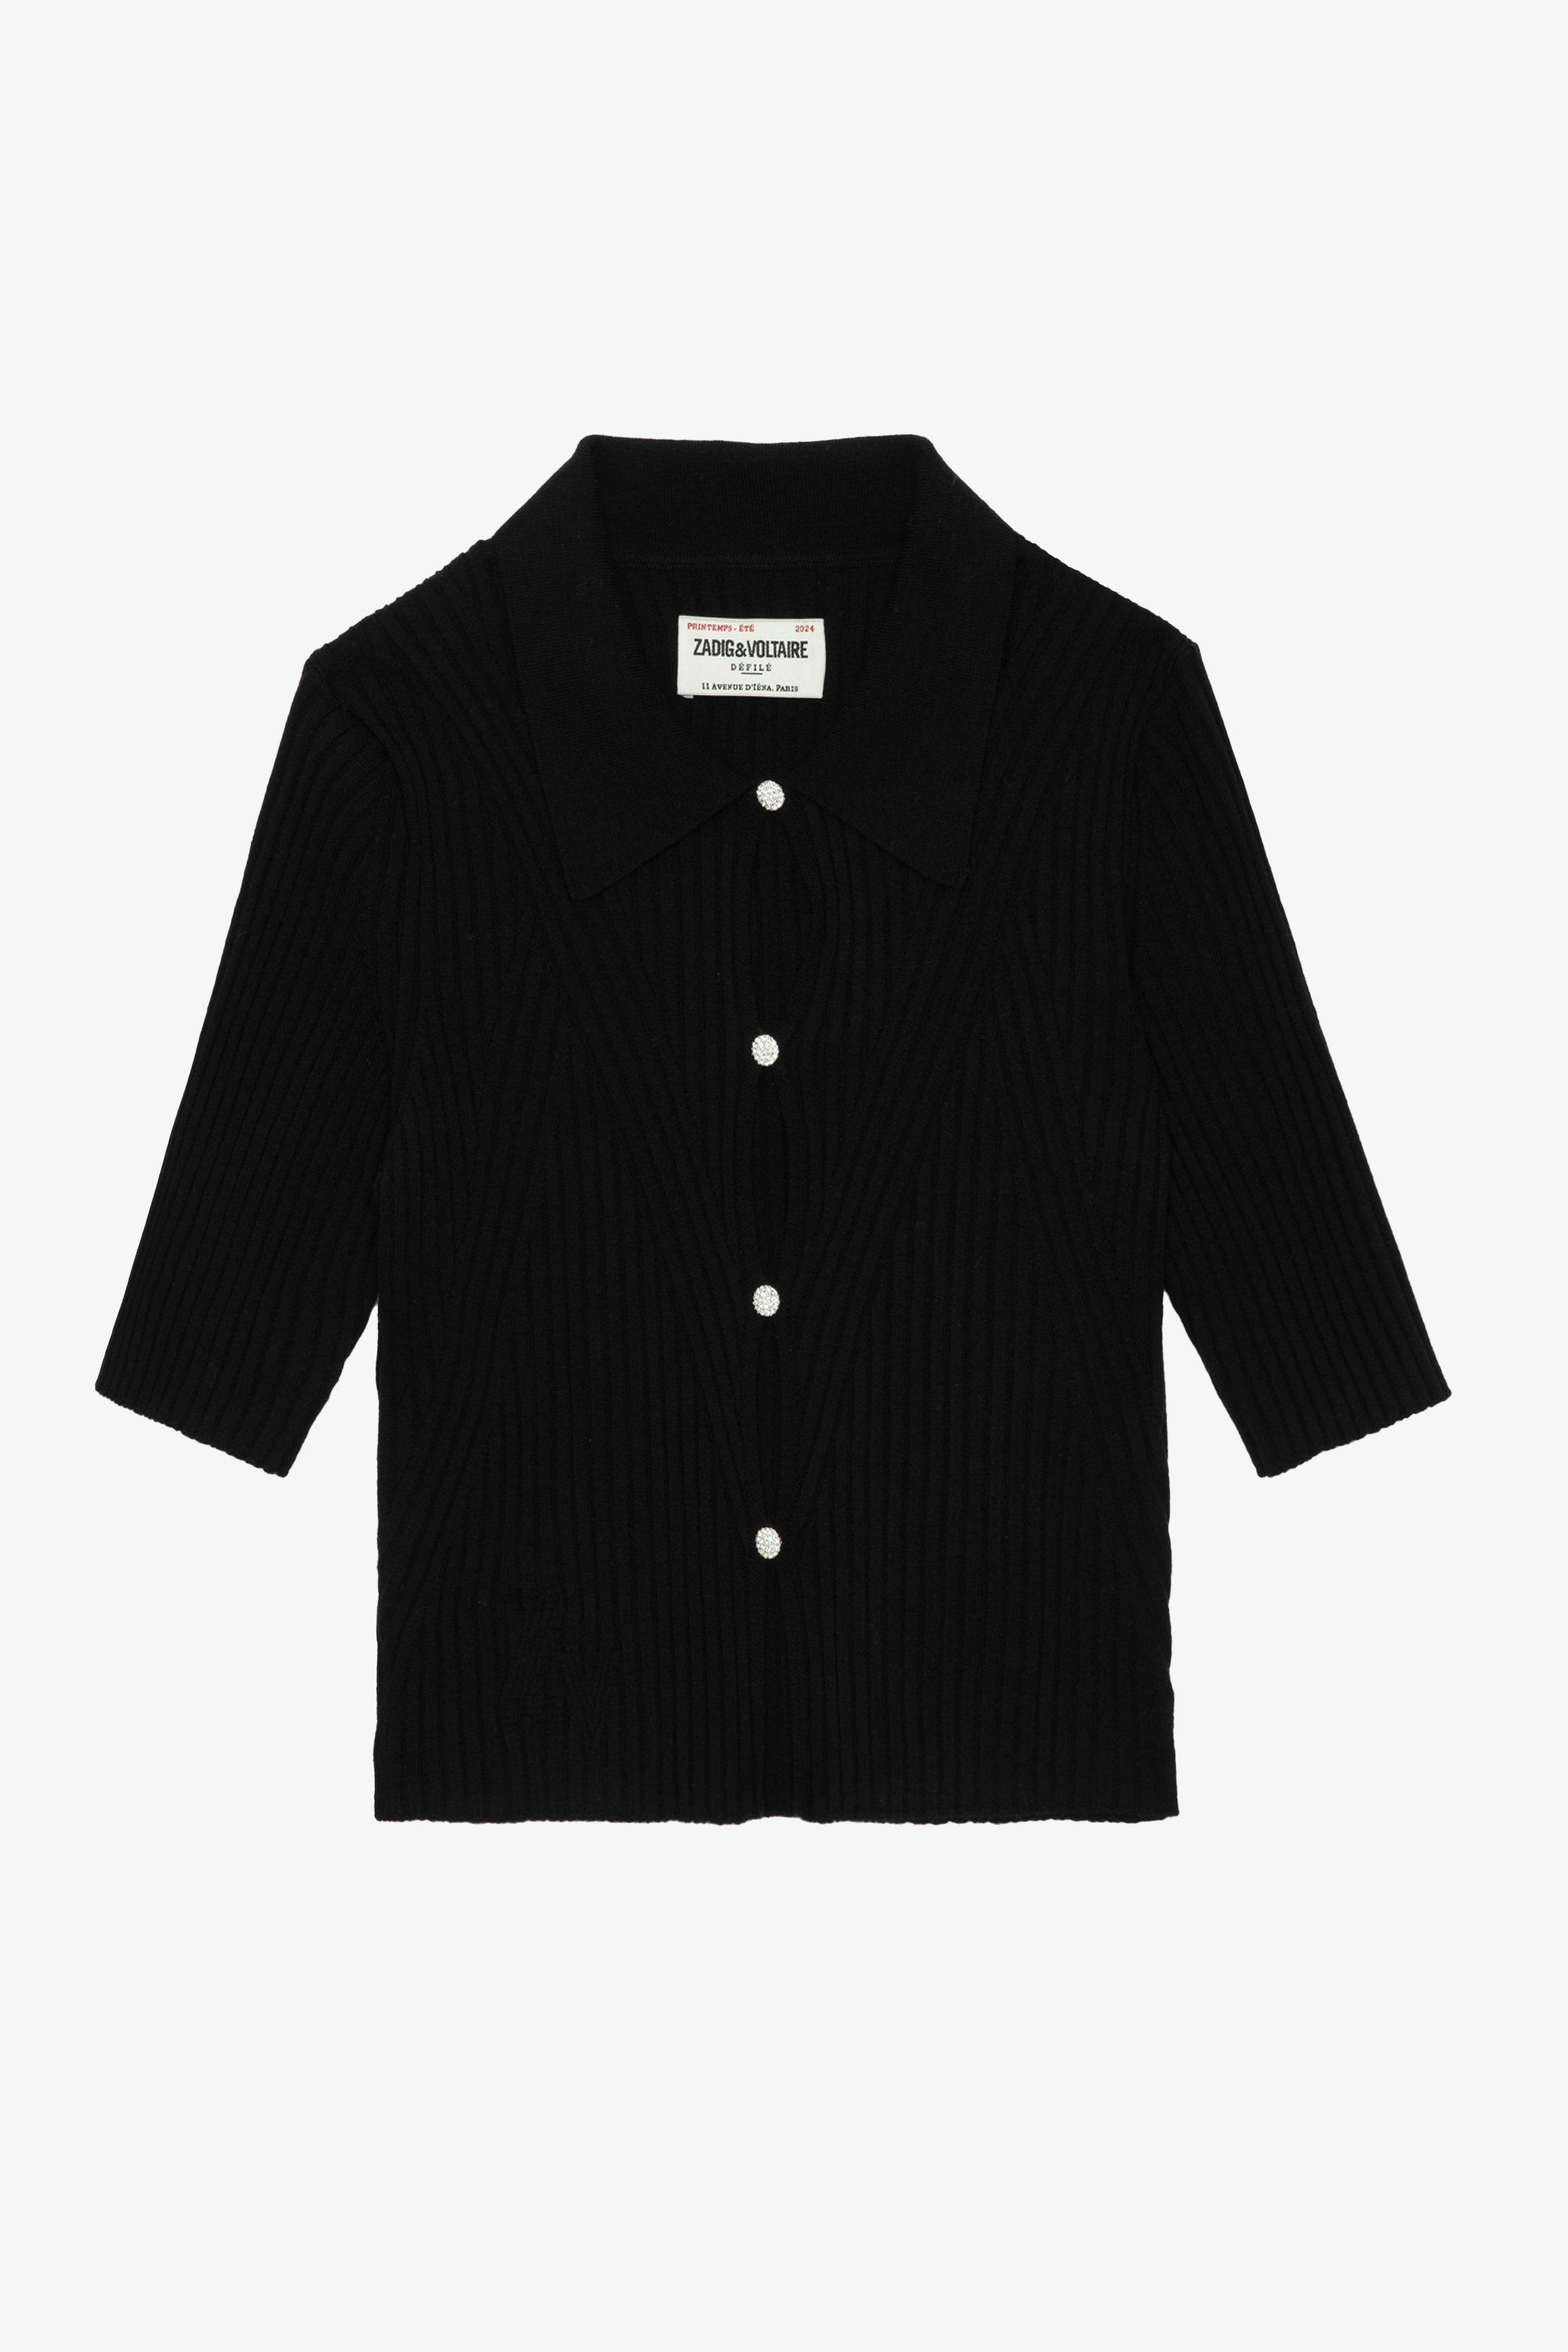 Top Lyam - Top court en laine mérinos noire à col chemise, manches courtes, boutons bijoux strass et ailes au dos.